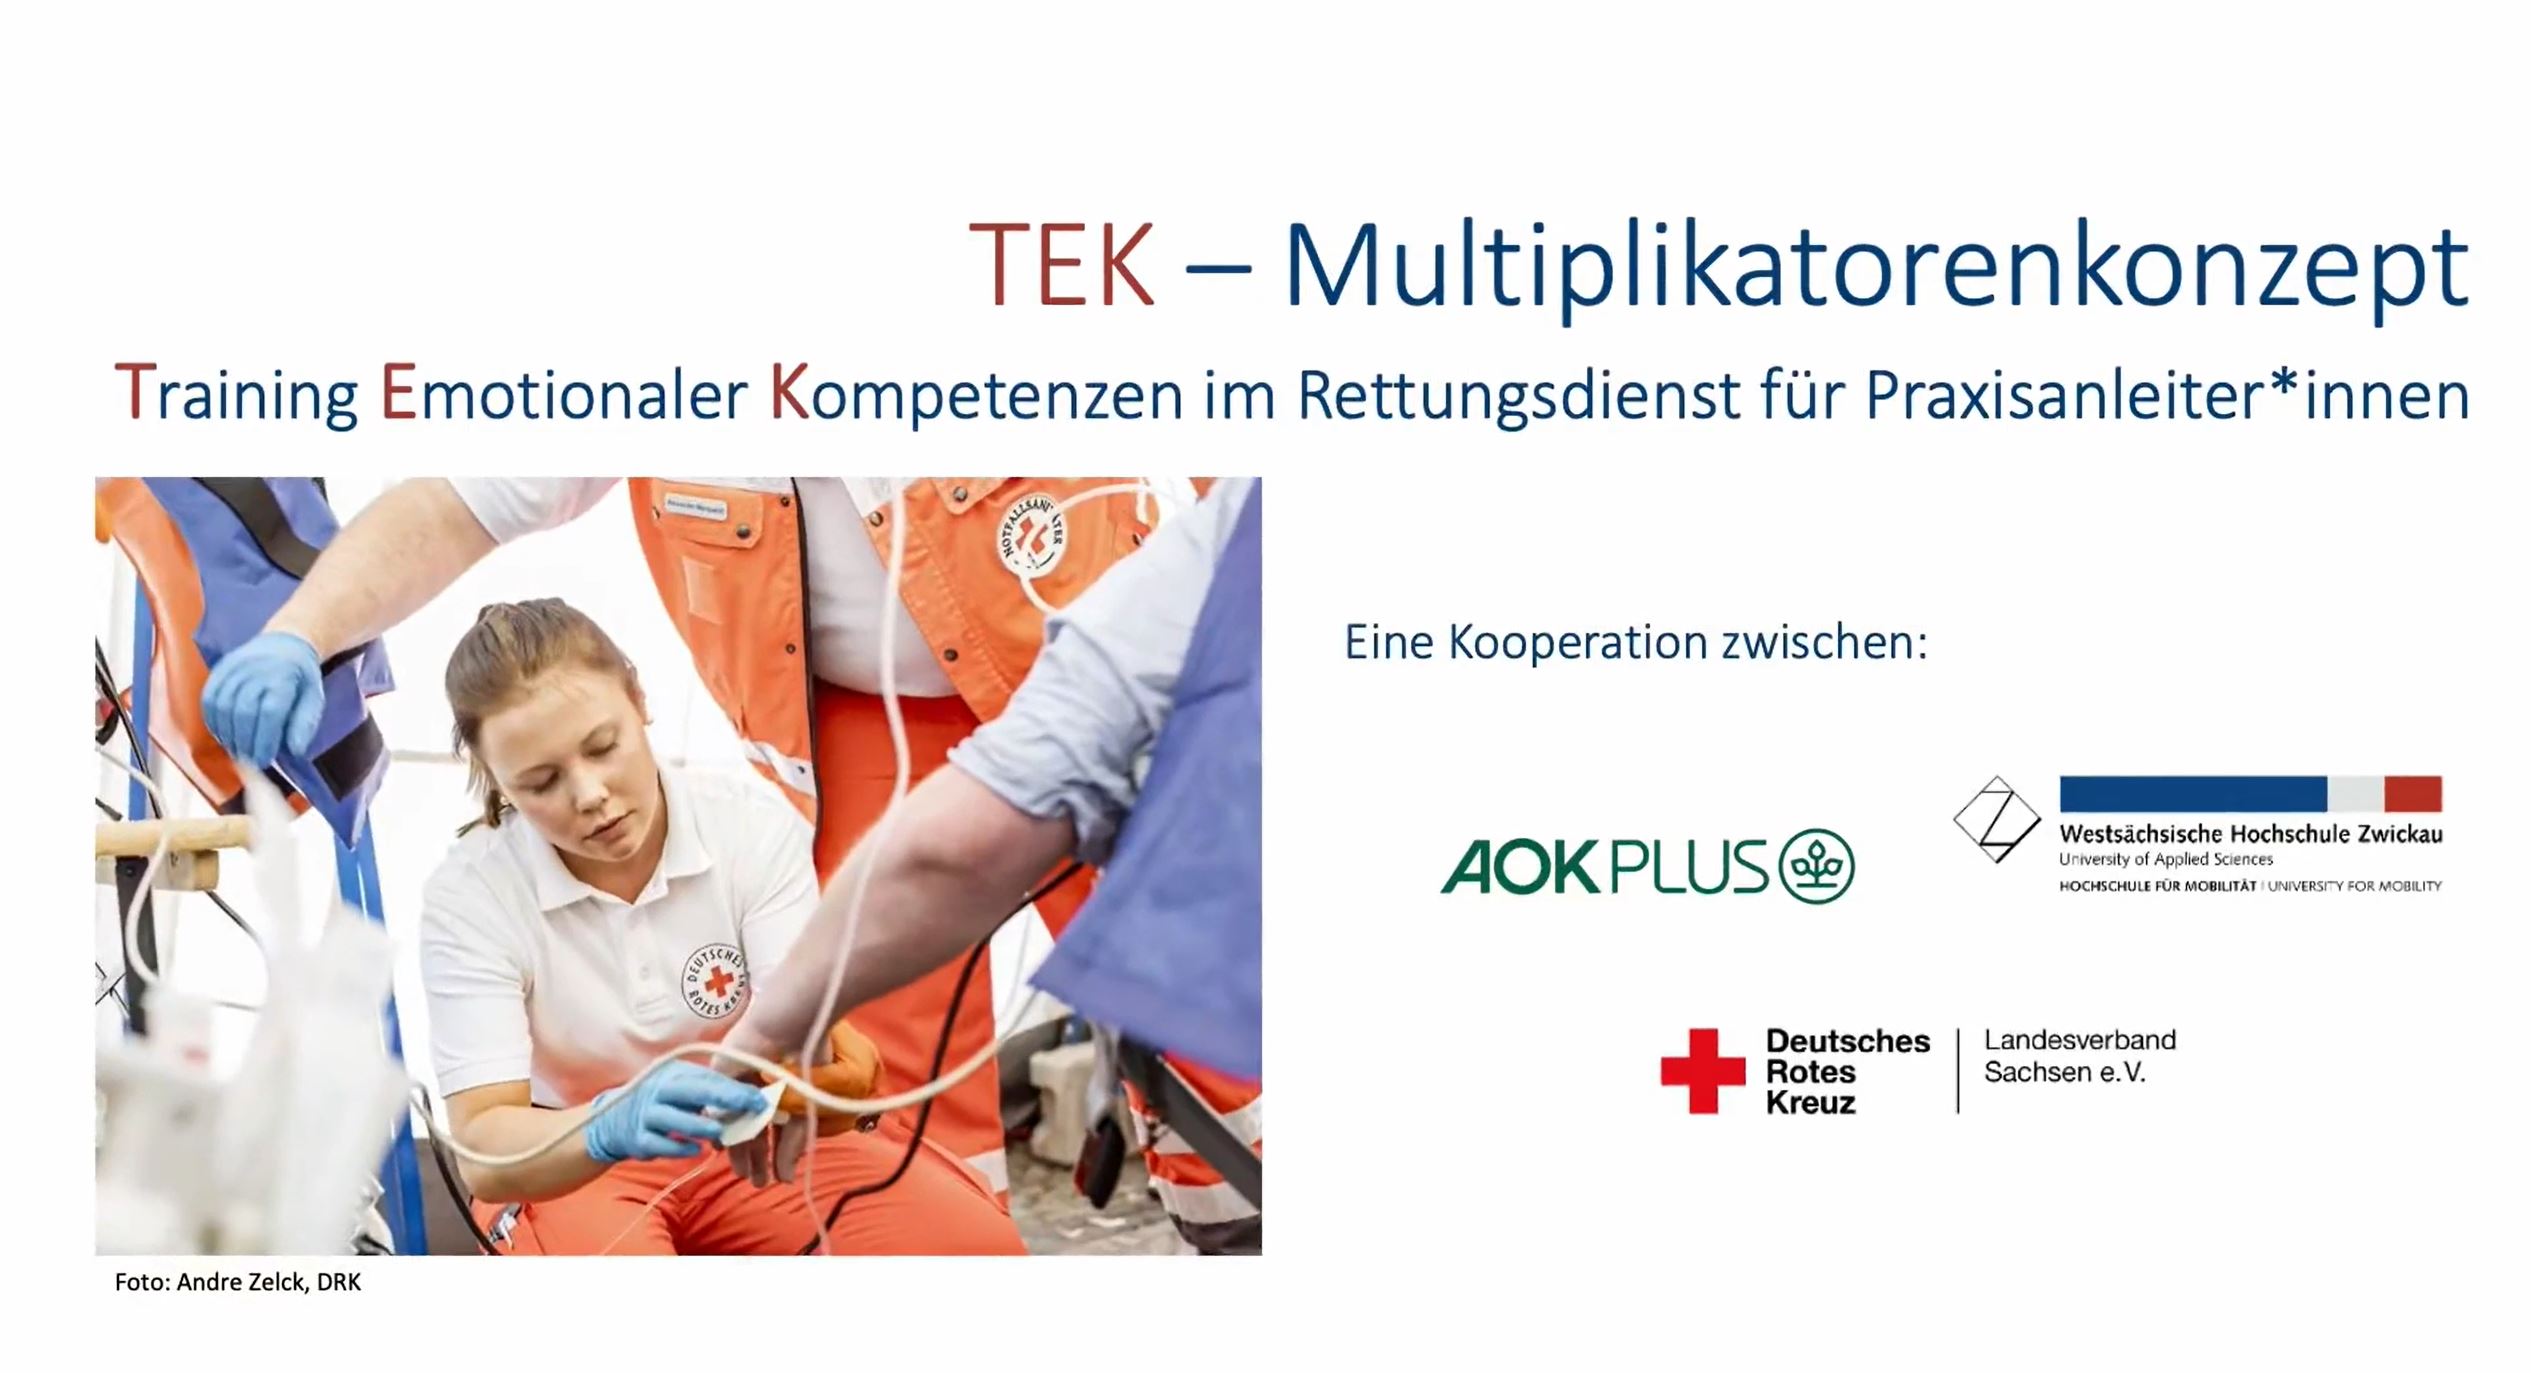 Abbildung: Forschungsprojekt "TEK - Multiplikatorenkonzept", Training Emotionaler Kompetenzen im Rettungsdienst für Praxisleiter*innen